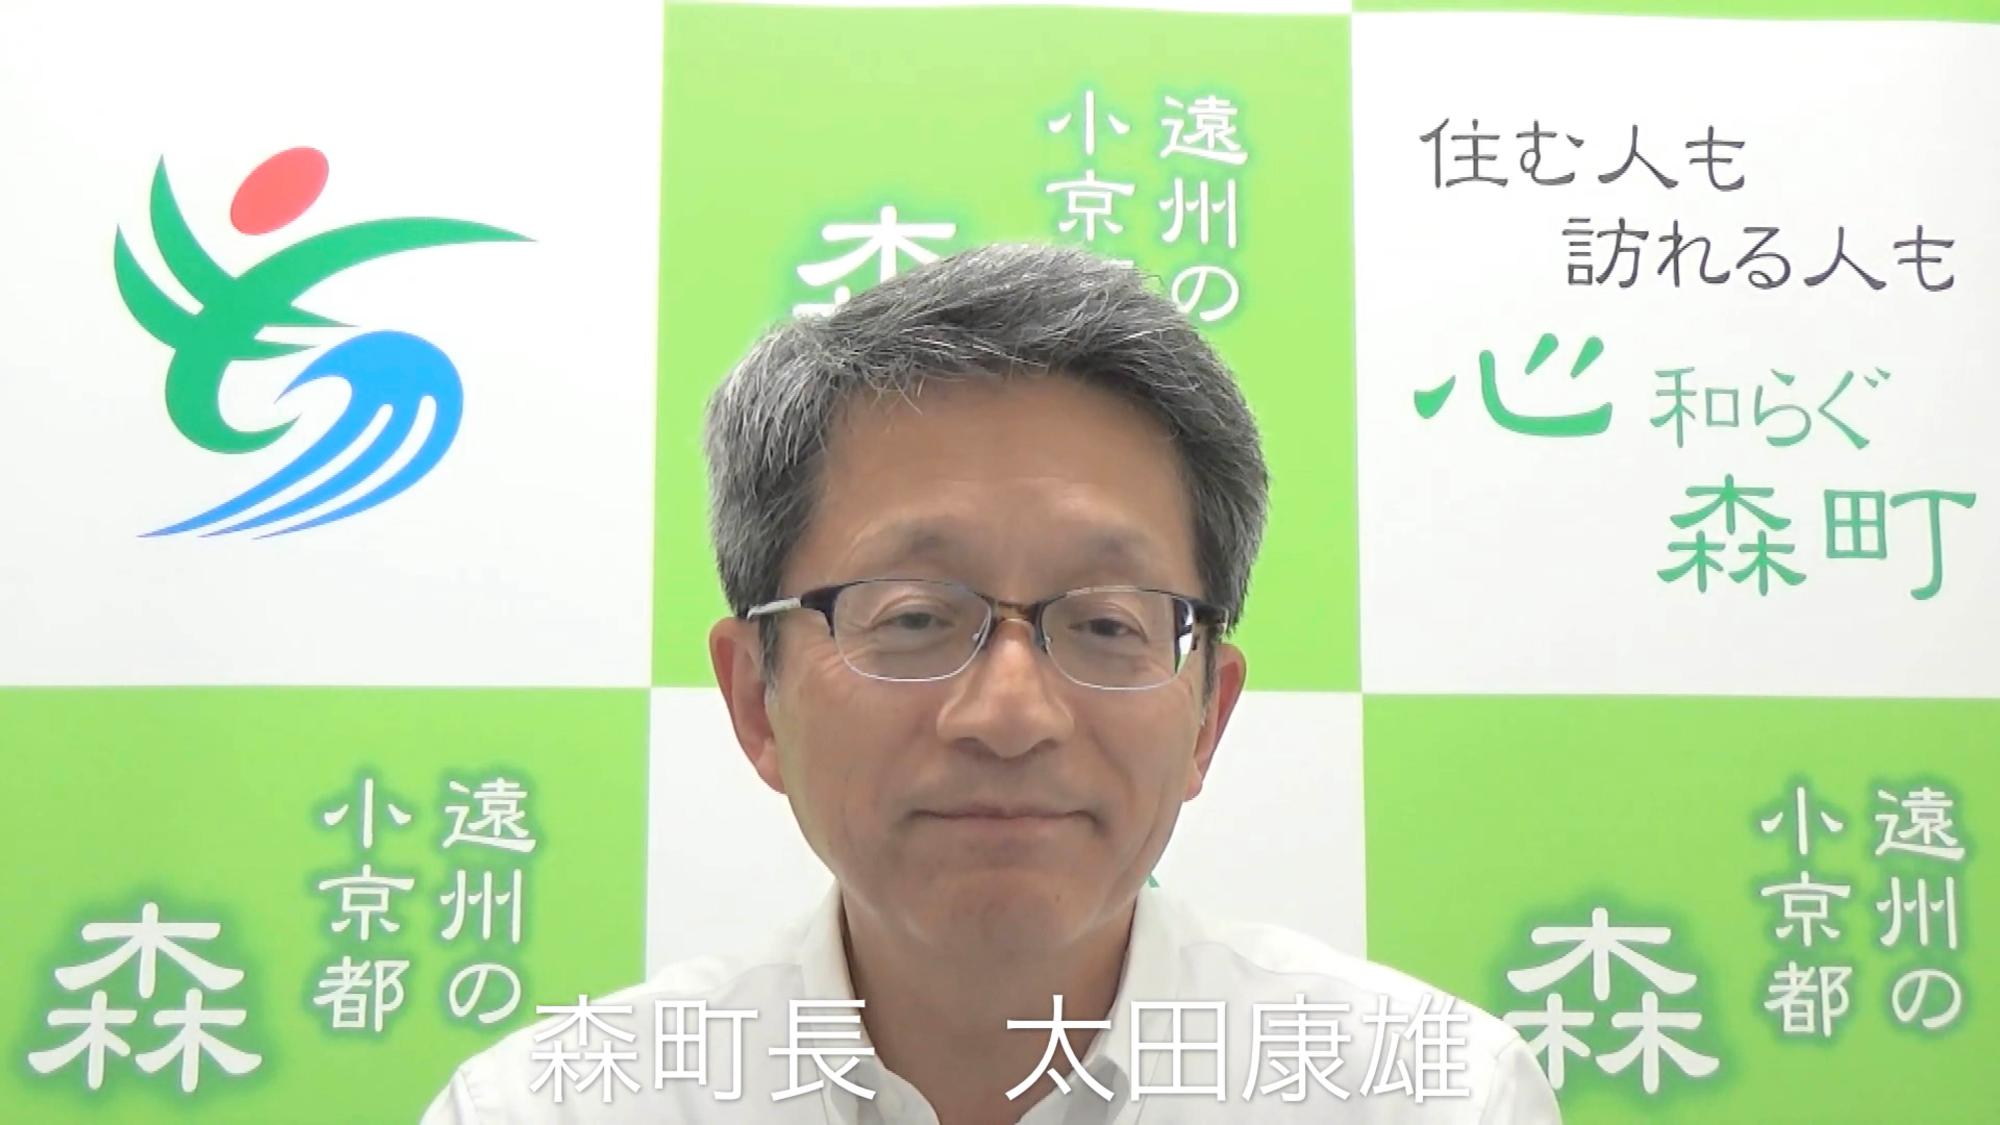 太田康雄森町長の写真（Youtube「今月の町政(森町)令和元年7月」へのリンク）」